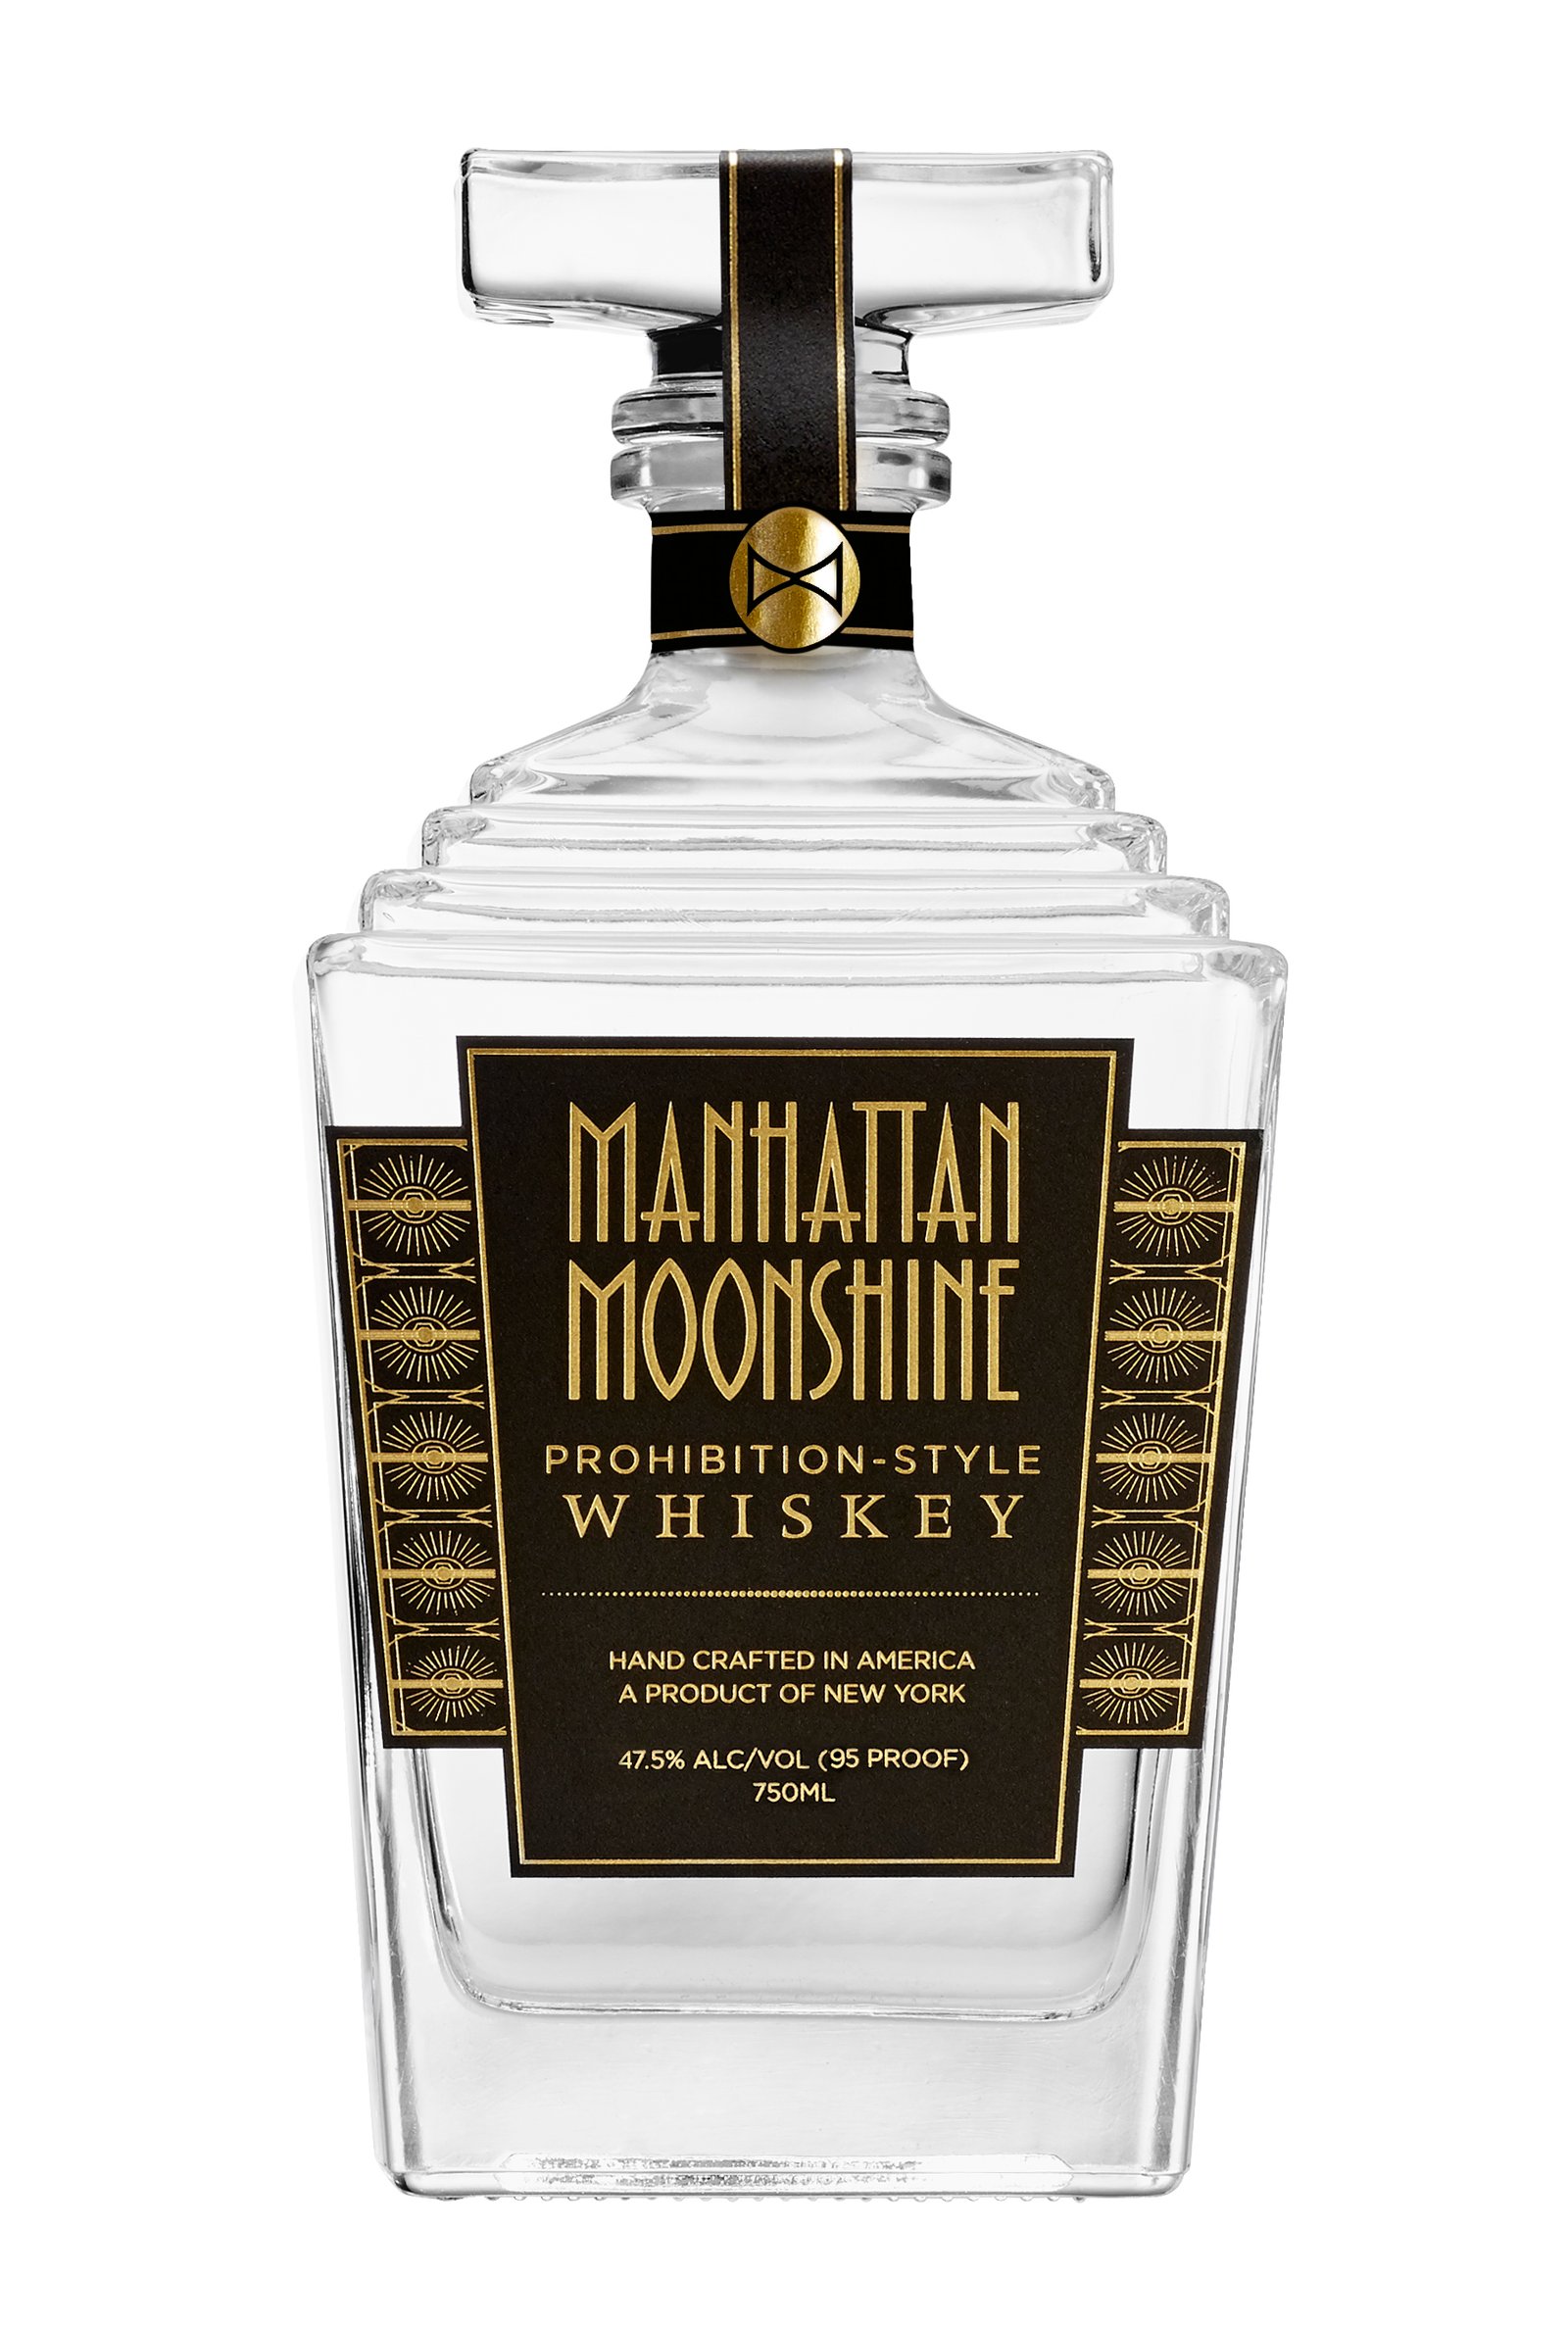 Manhattan Moonshine: First Luxury Un-Aged Whiskey